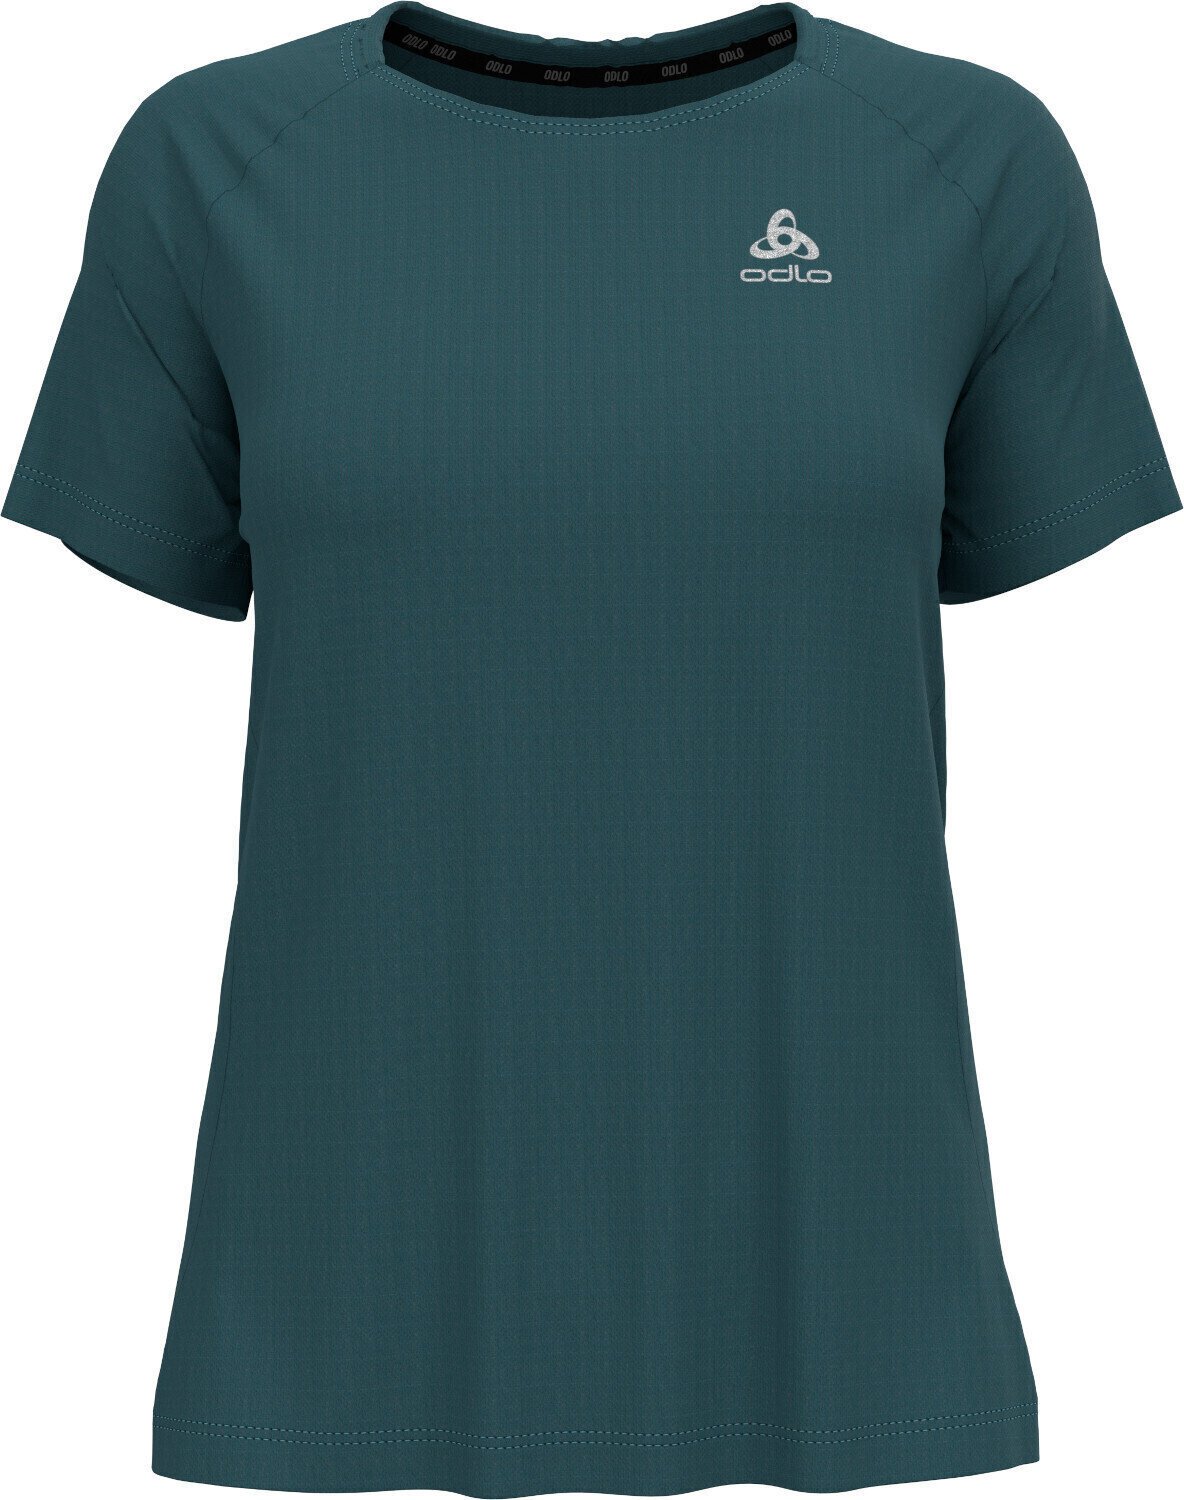 Rövidujjú futópólók
 Odlo Essential T-Shirt Balsam XS Rövidujjú futópólók